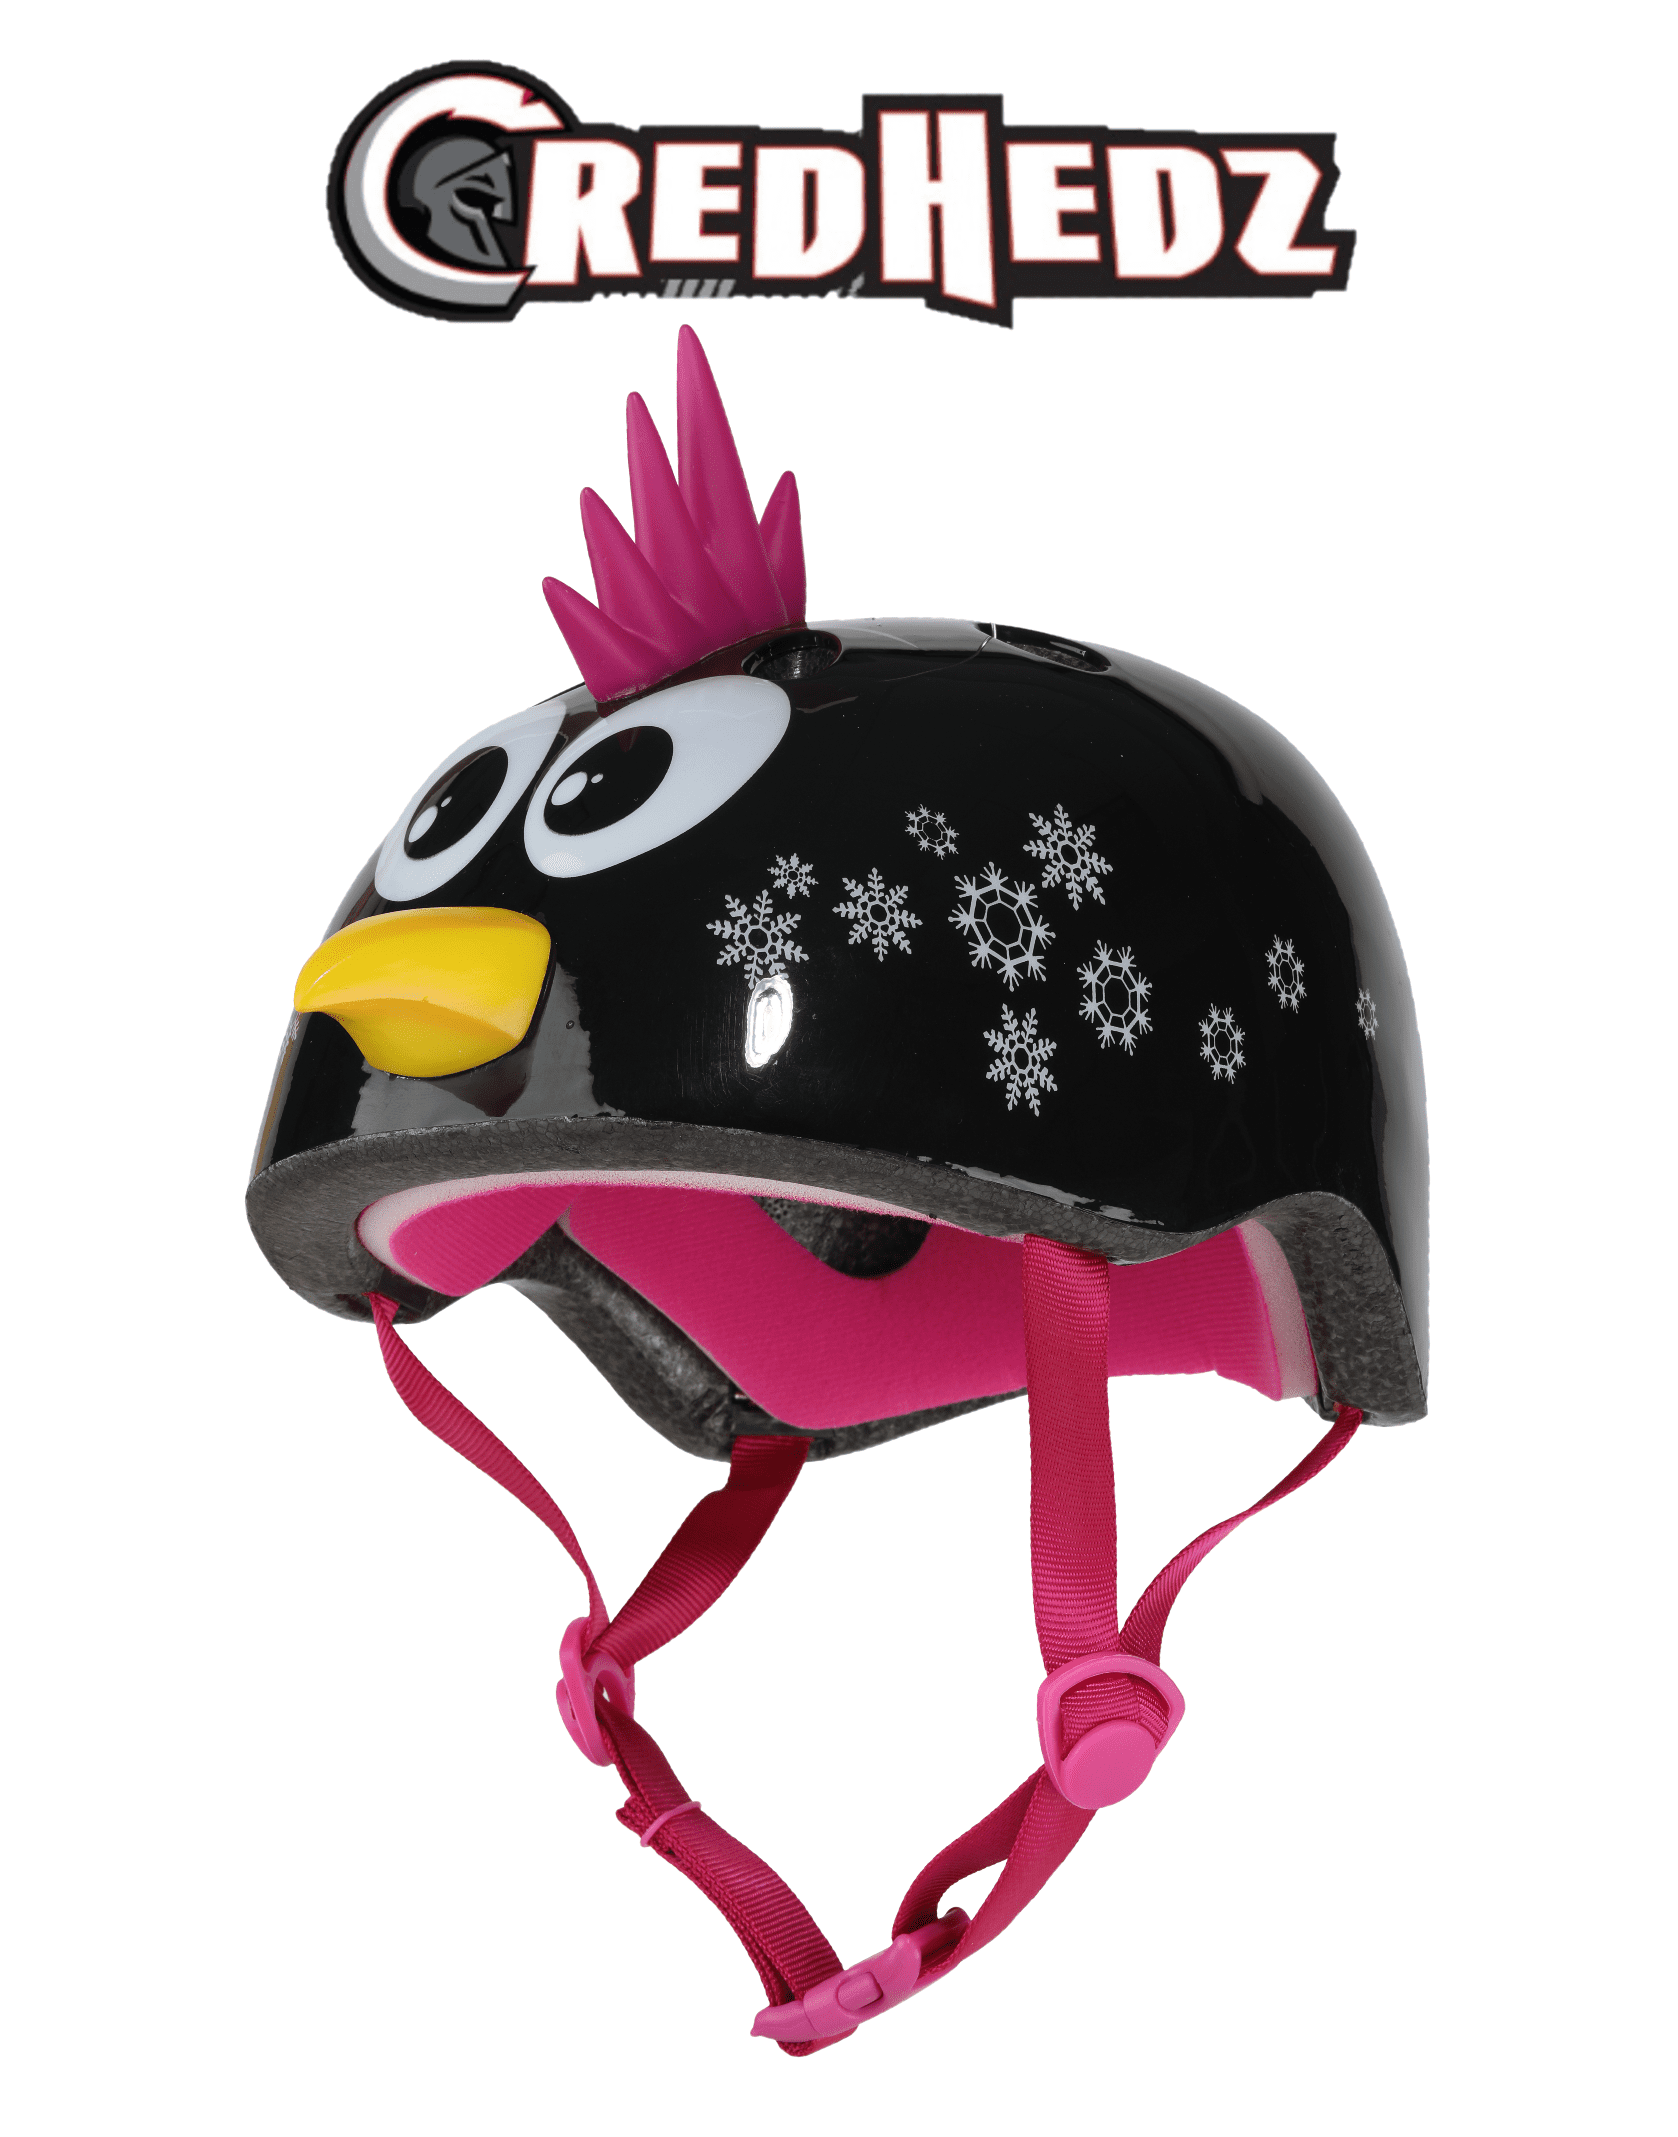 Credhedz Punk Panda Kids Bike Helmet & Kids Skateboard Helmet 